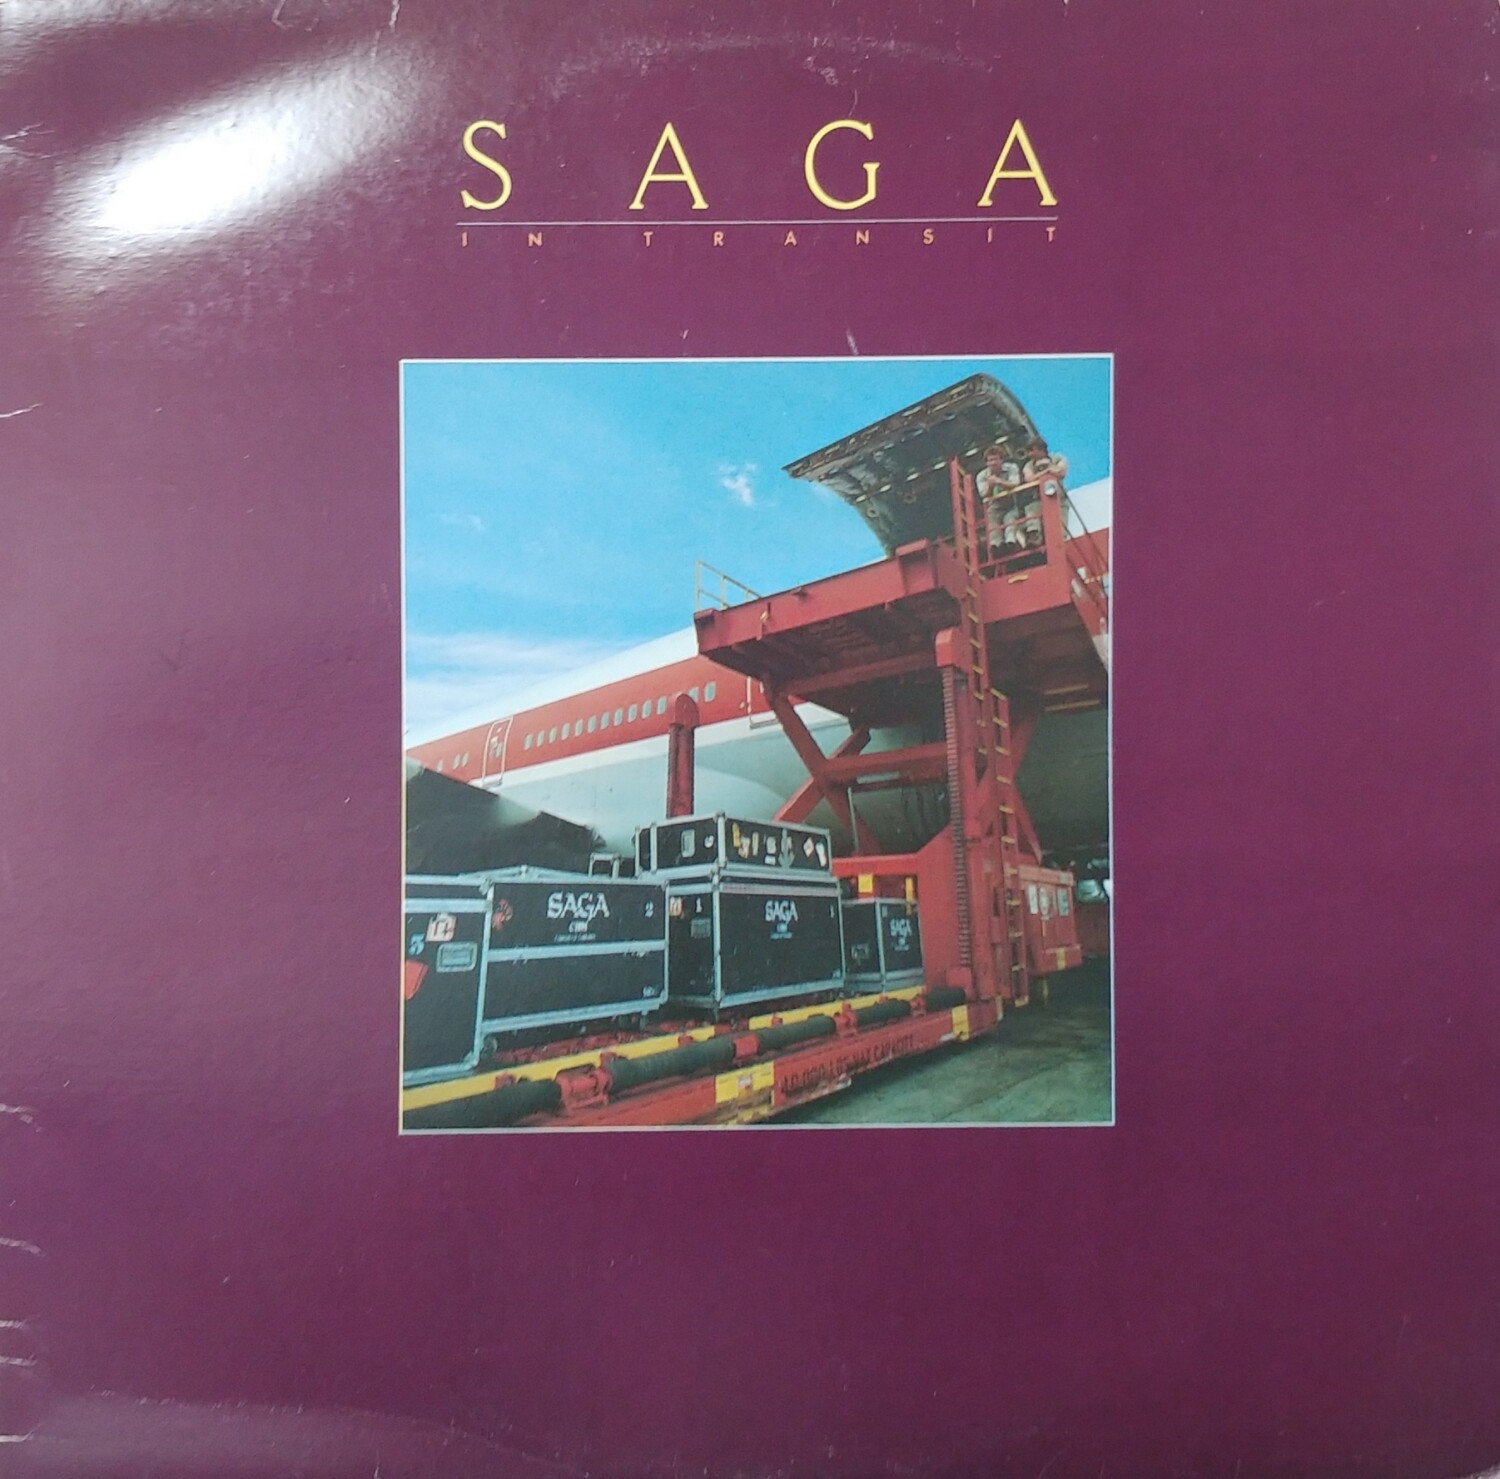 Saga - In transit